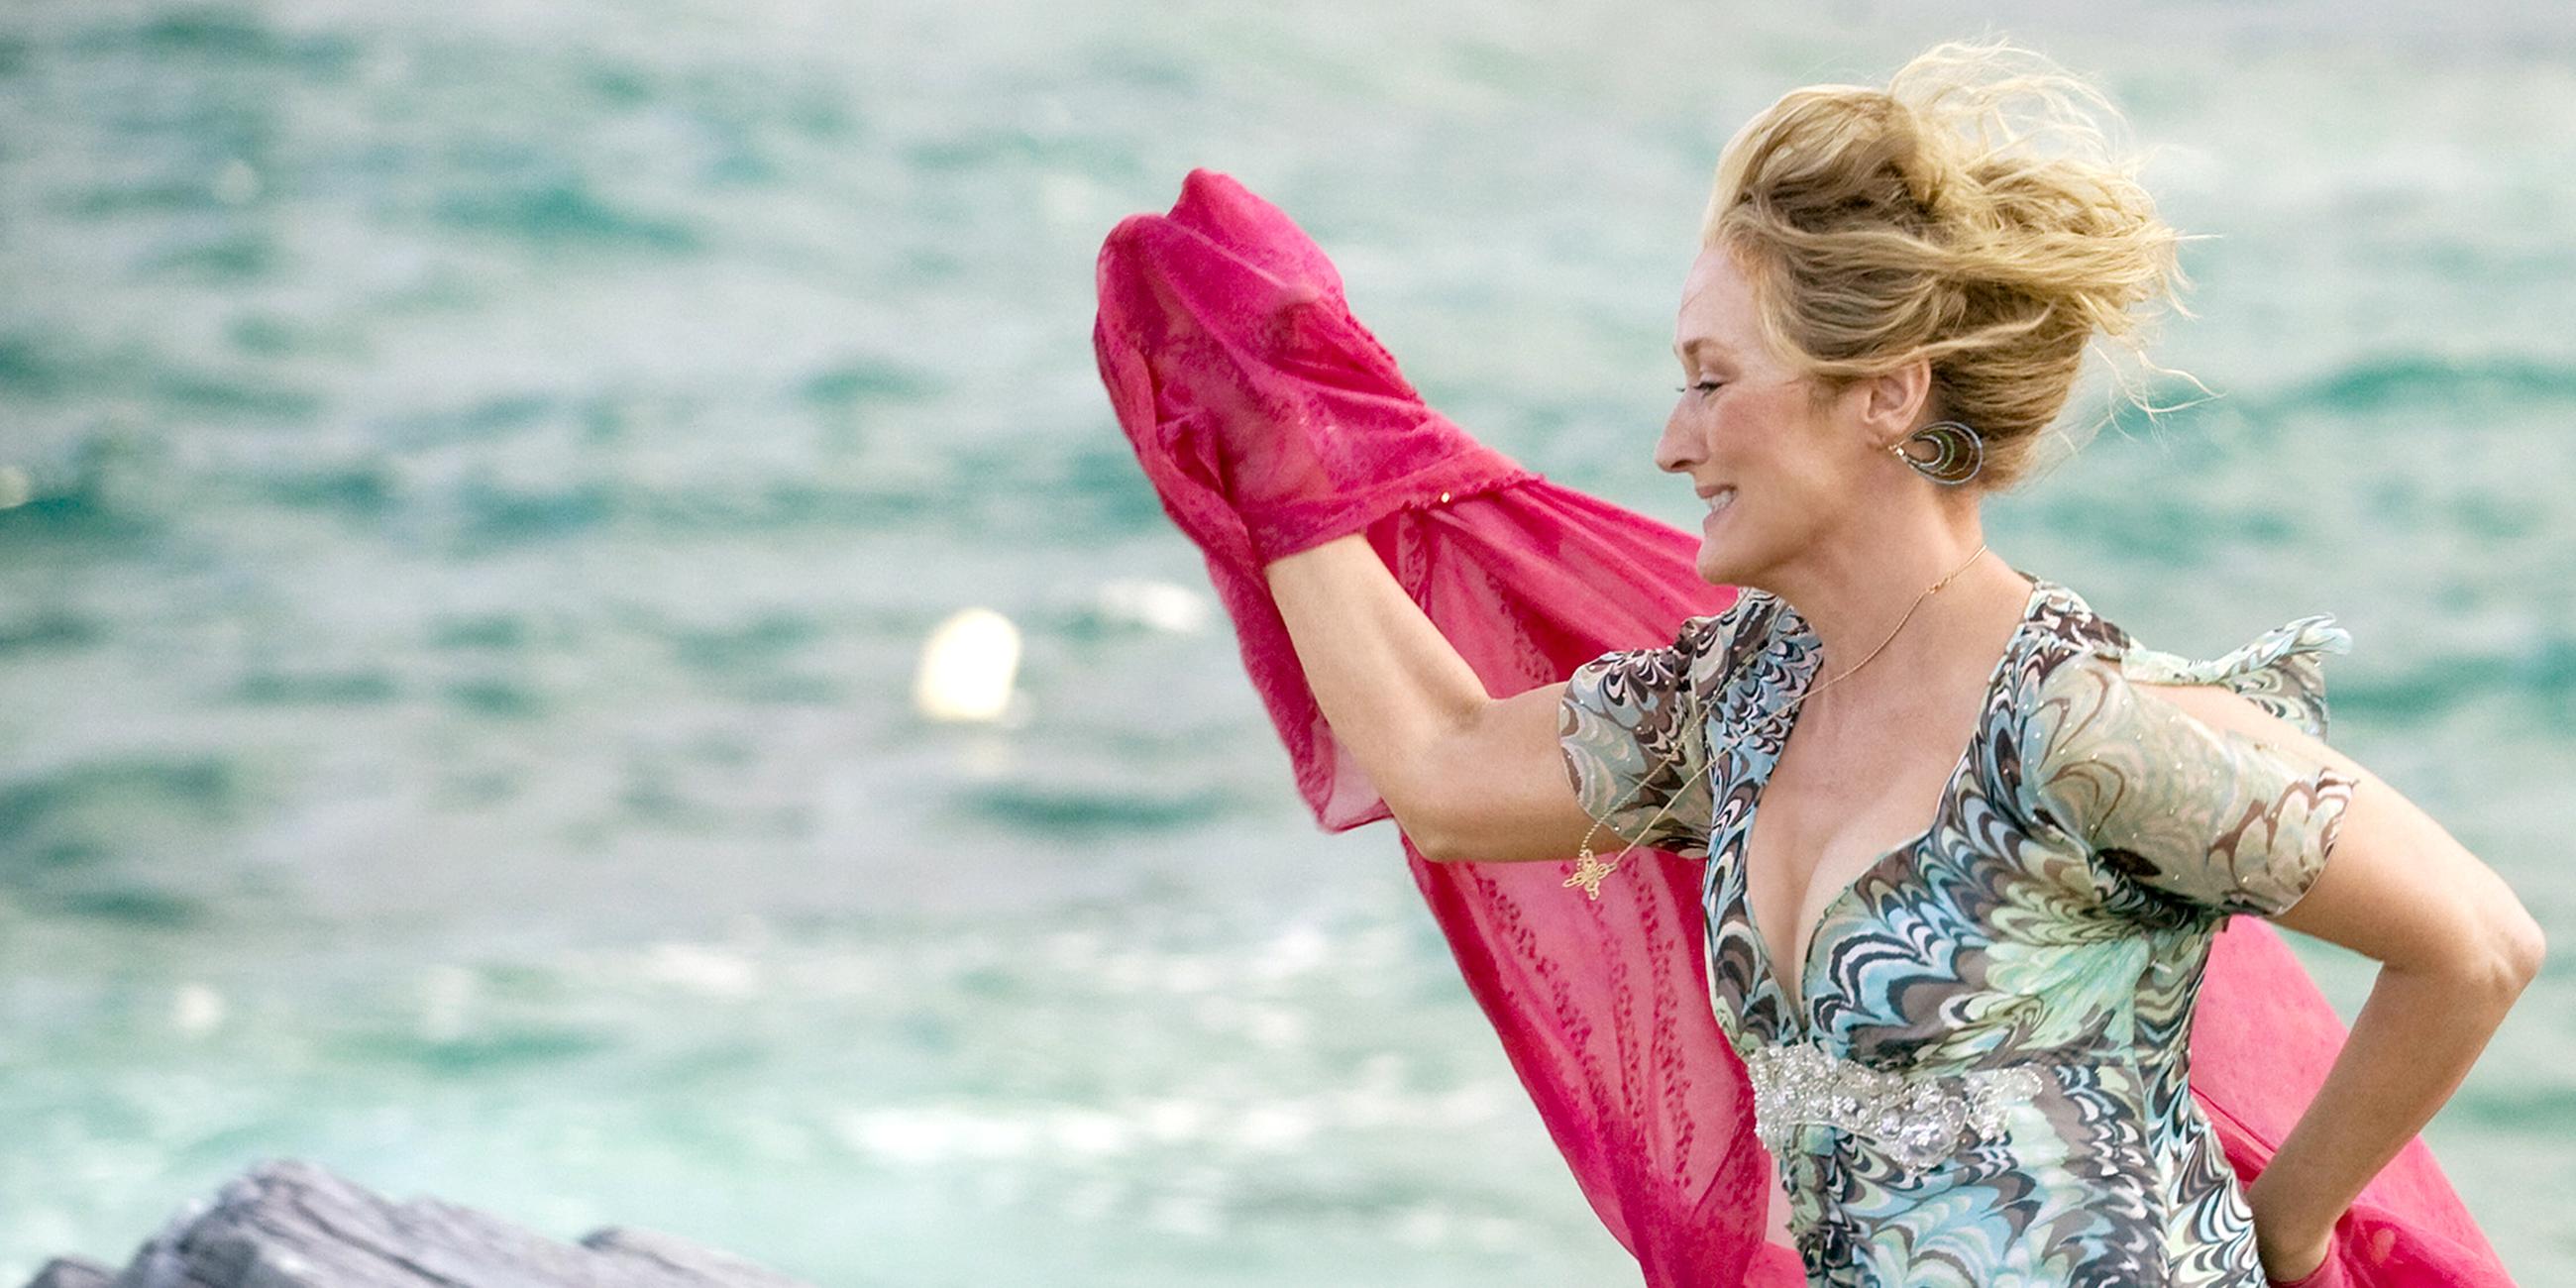 Donna (Meryl Streep) läuft in einem leichten Sommerkleid und mit wehendem Tuch am Strand entlang.